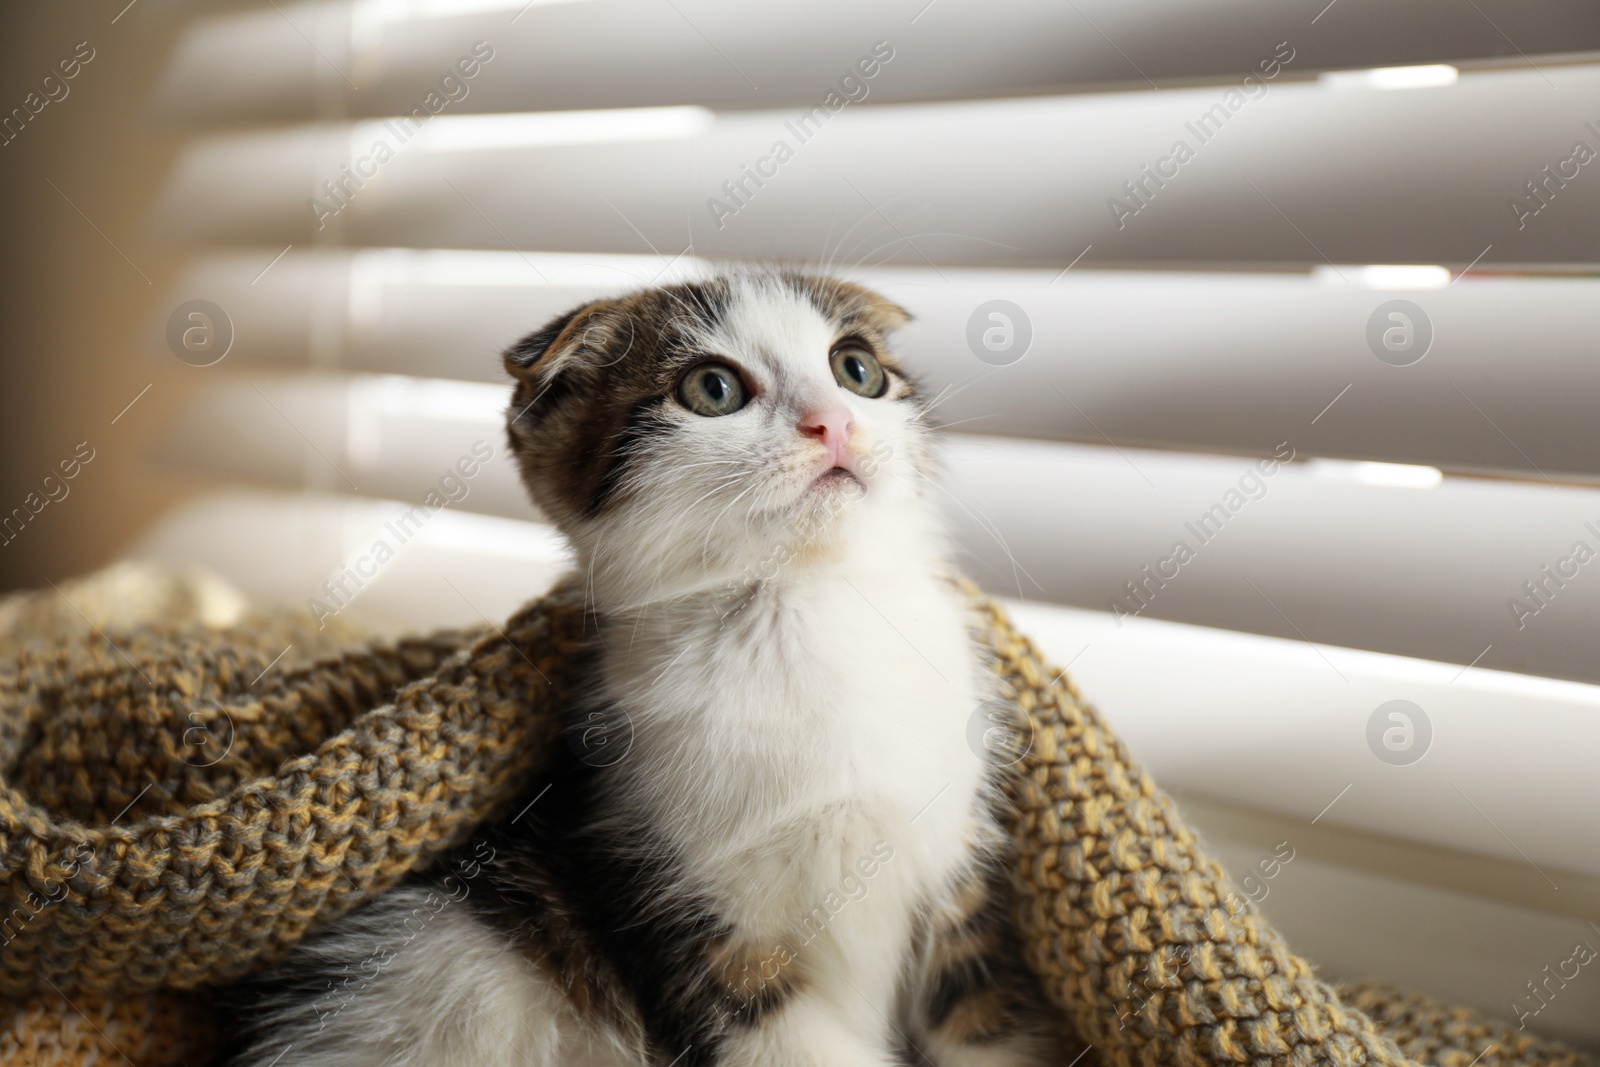 Photo of Adorable little kitten under blanket near window indoors